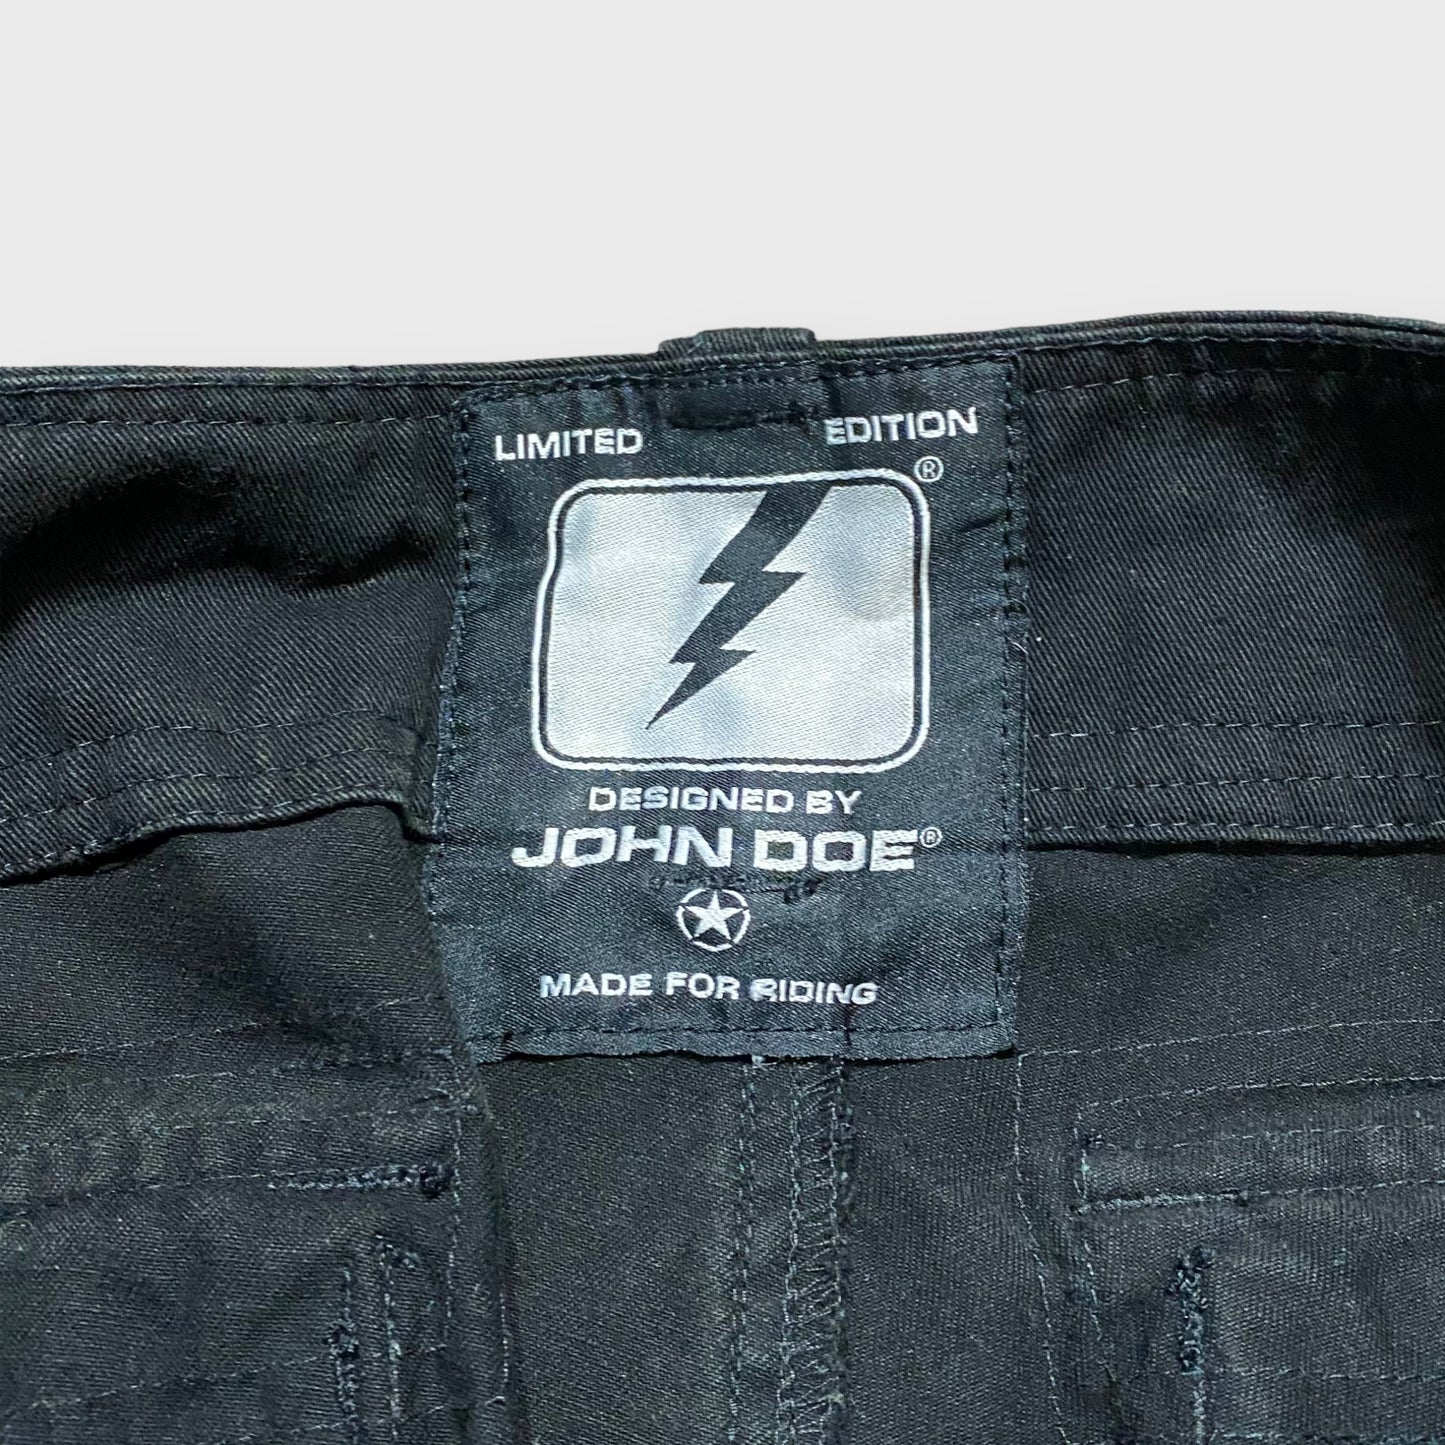 "JOHN DOE" M-51 type cargo pants